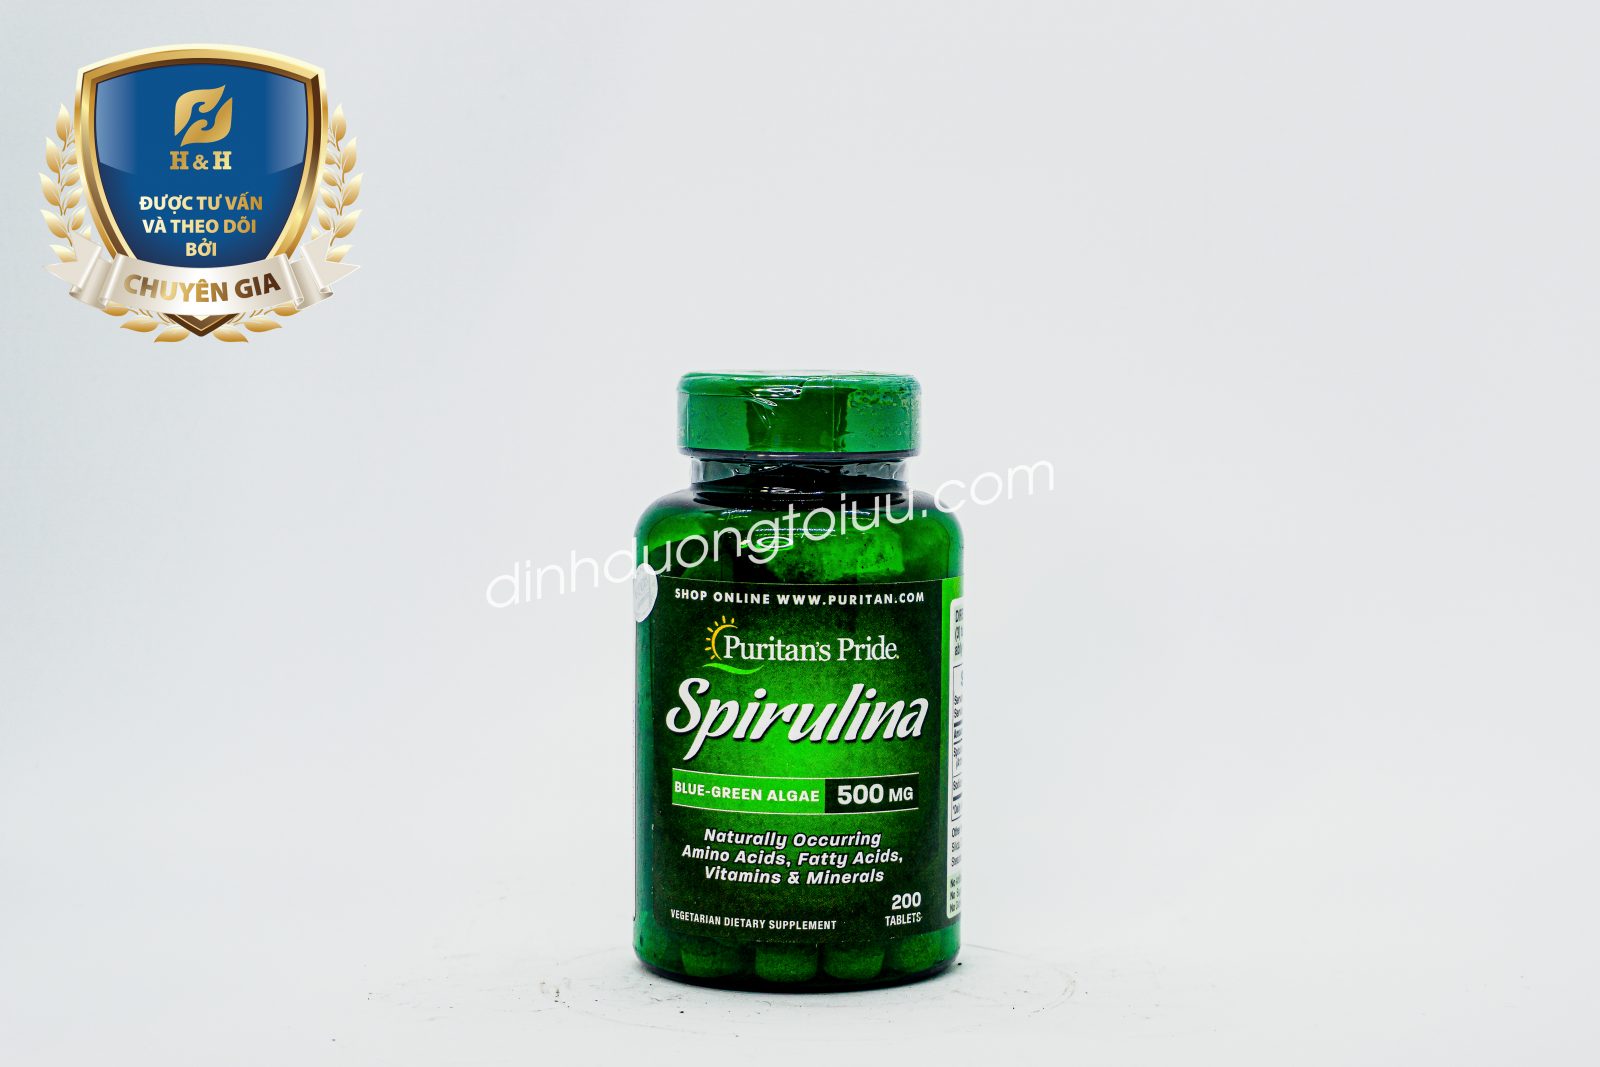 Tảo xoắn Puritan’s Pride Spirulina 500mg là sản phẩm bổ sung nhiều loại enzyme thực vật tốt cho cơ thể